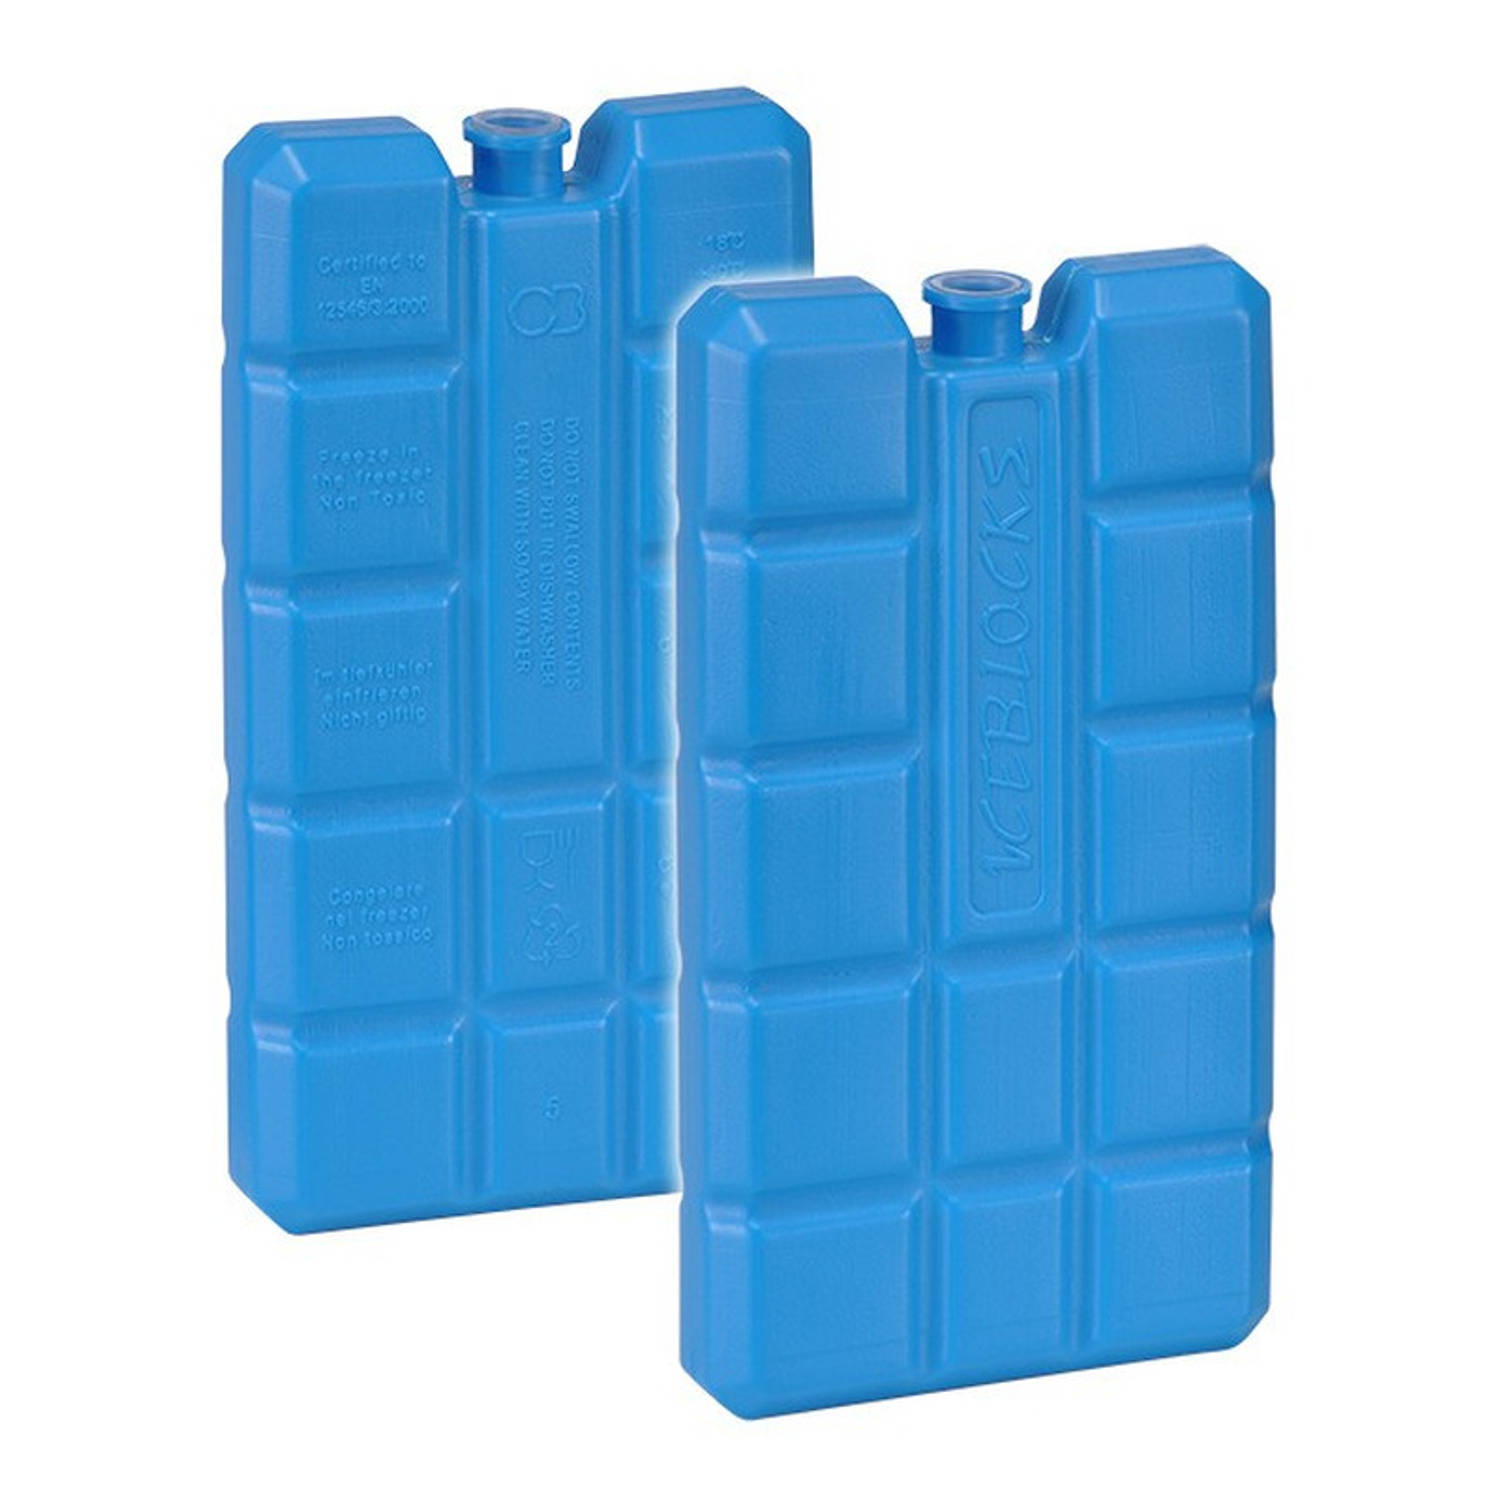 Set van 2x blauwe koelelementen 200 gram 8 x 15 x 2 cm - Koelblokken/koelelementen voor koeltas/koelbox